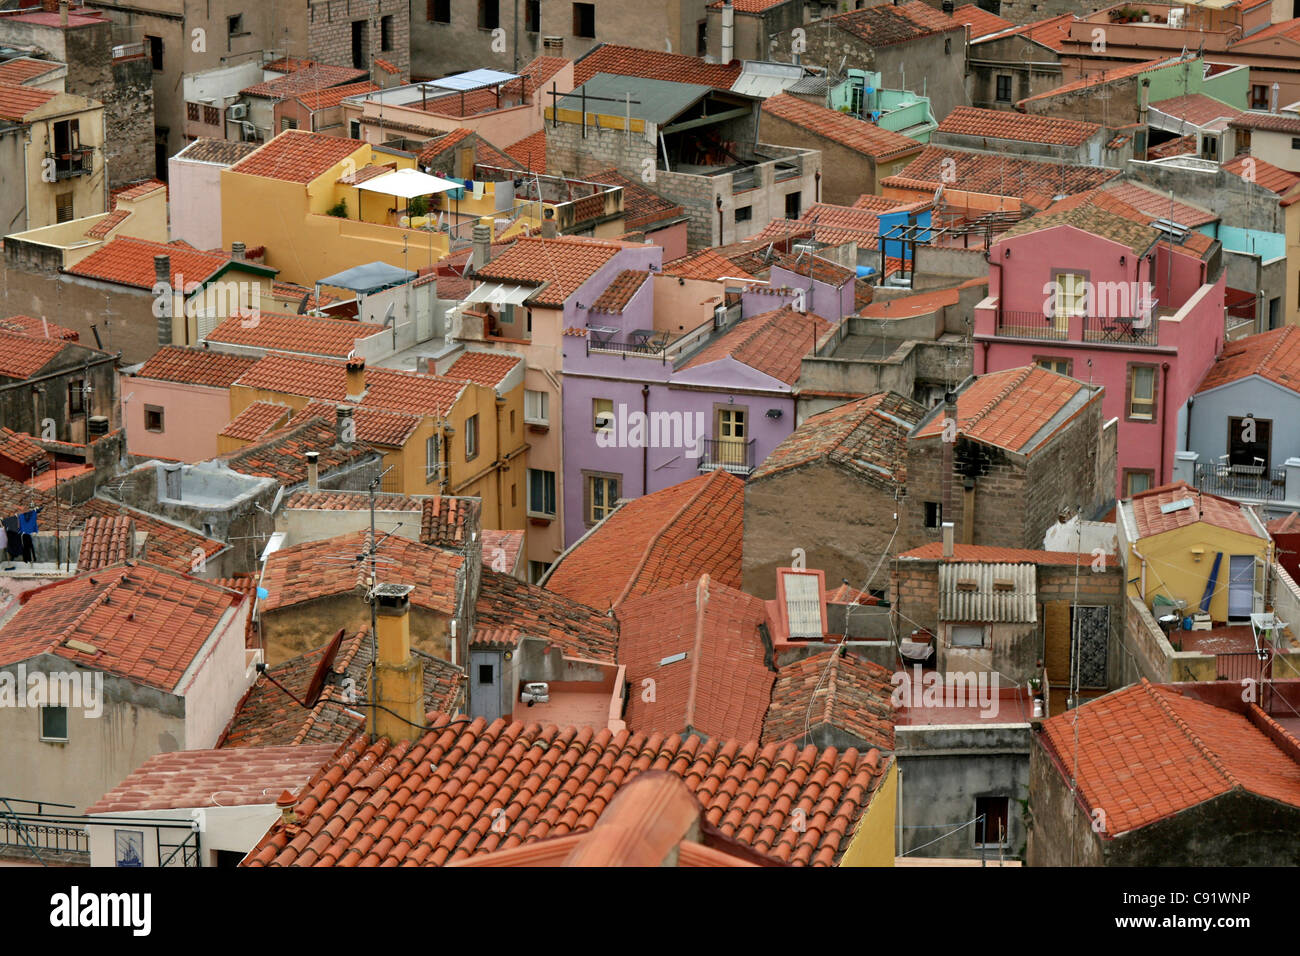 Bosa ist eine bunte Stadt Gebäude mit roten Ziegeldächern, die bemalten Wänden und Häusern in engen Gassen sehr nahe beieinander. Stockfoto